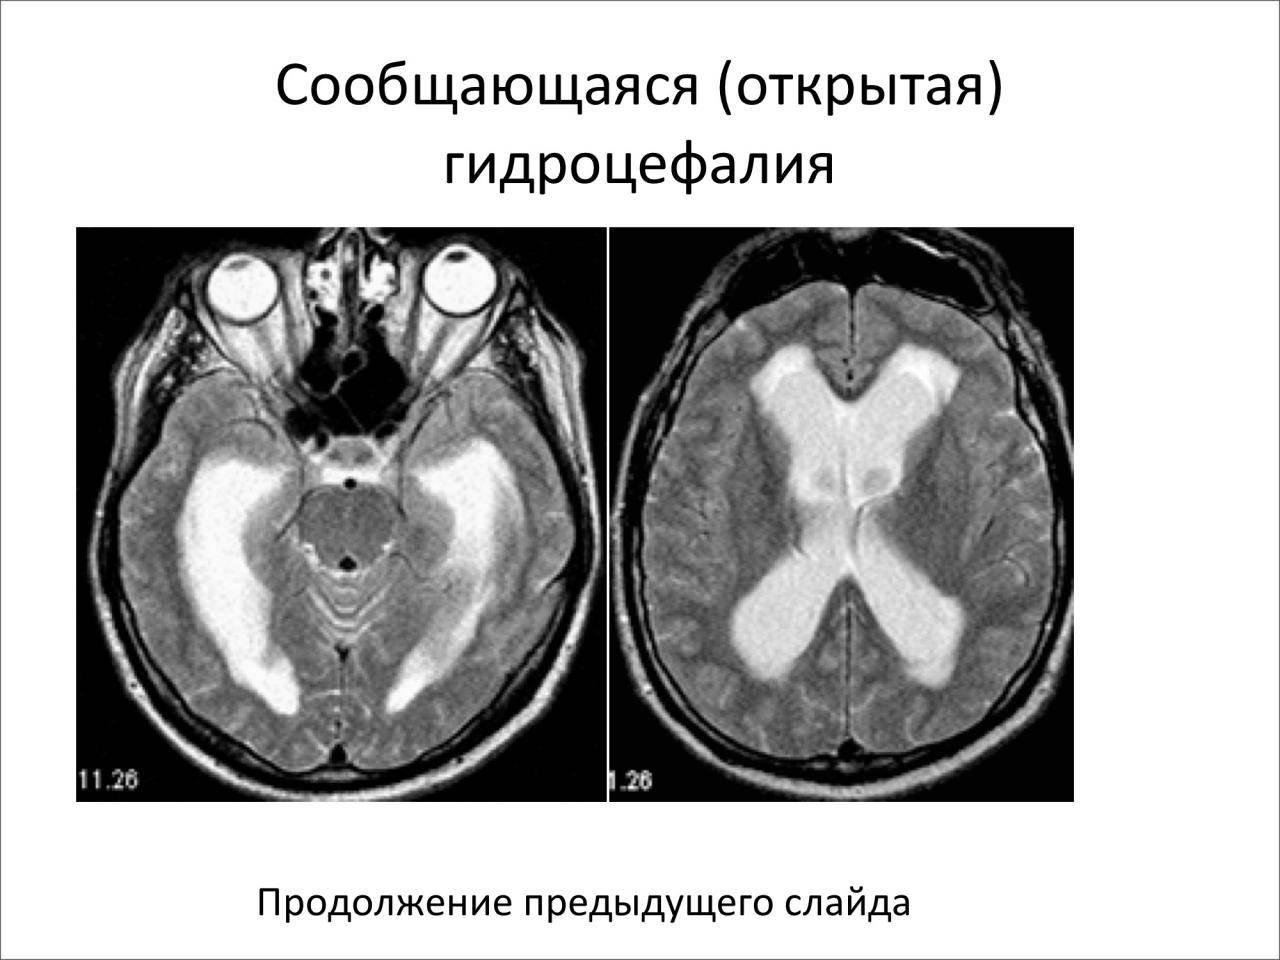 Симптомы гидроцефалии головного мозга у взрослых